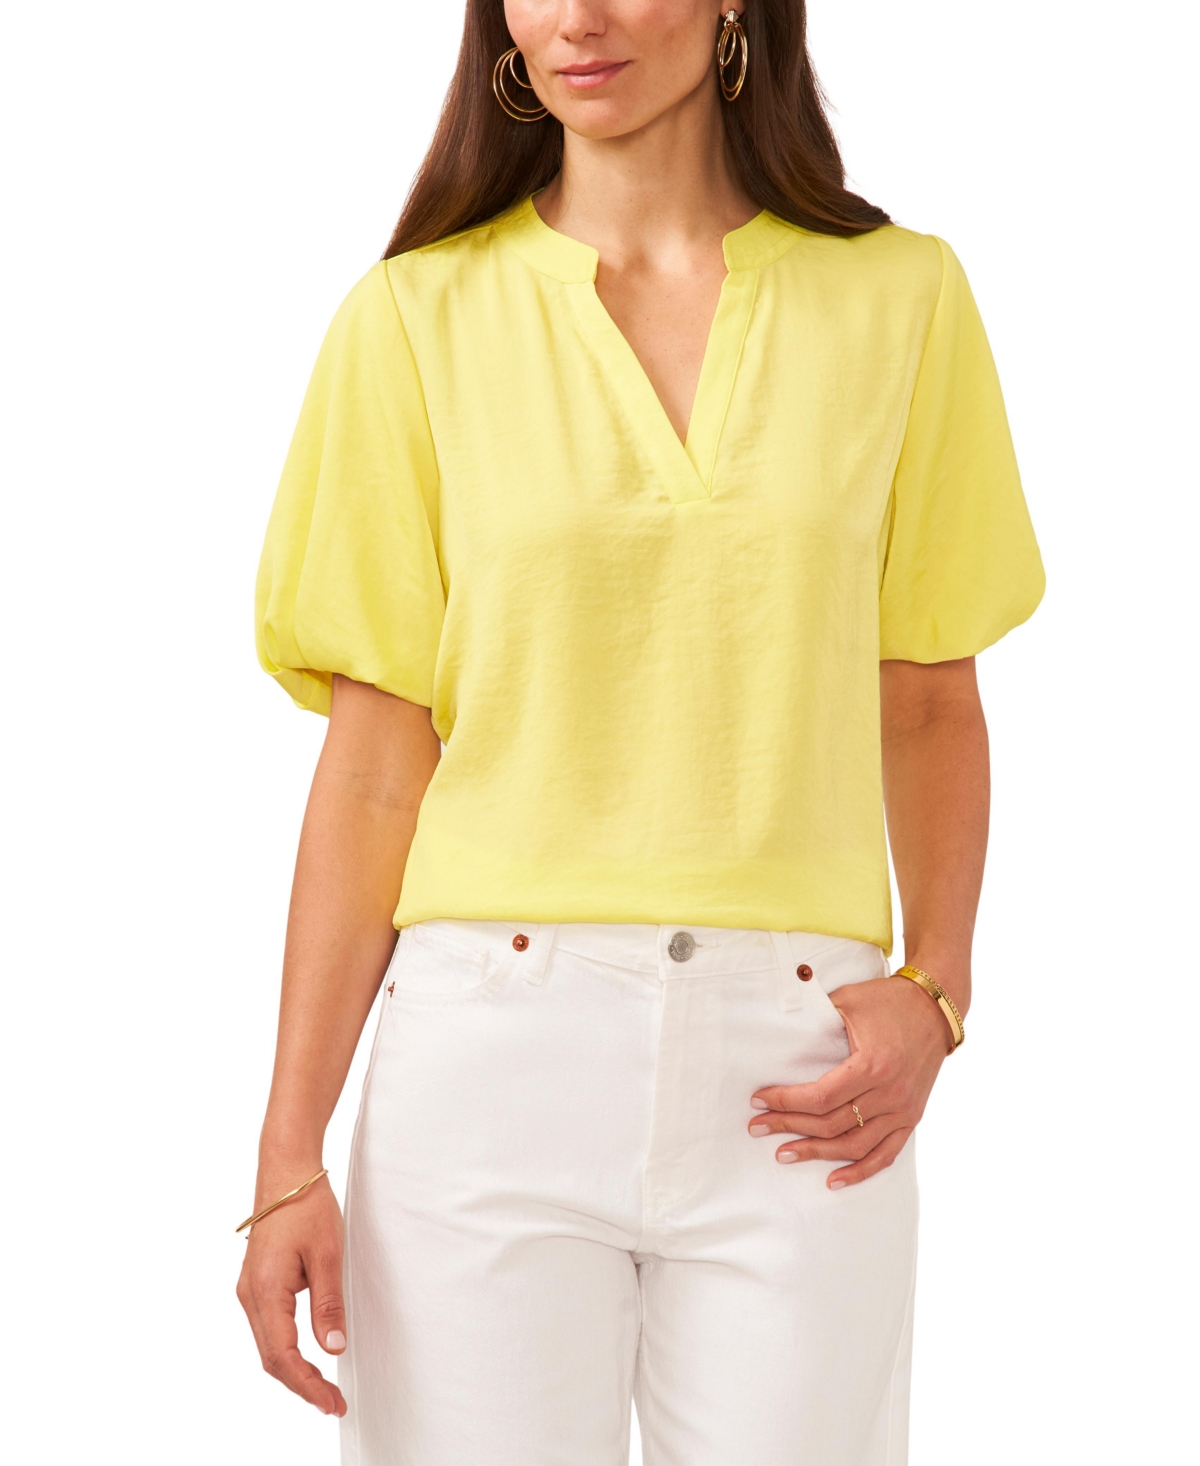 Women's V-Neck Short Puff Sleeve Blouse - Bright Lemon